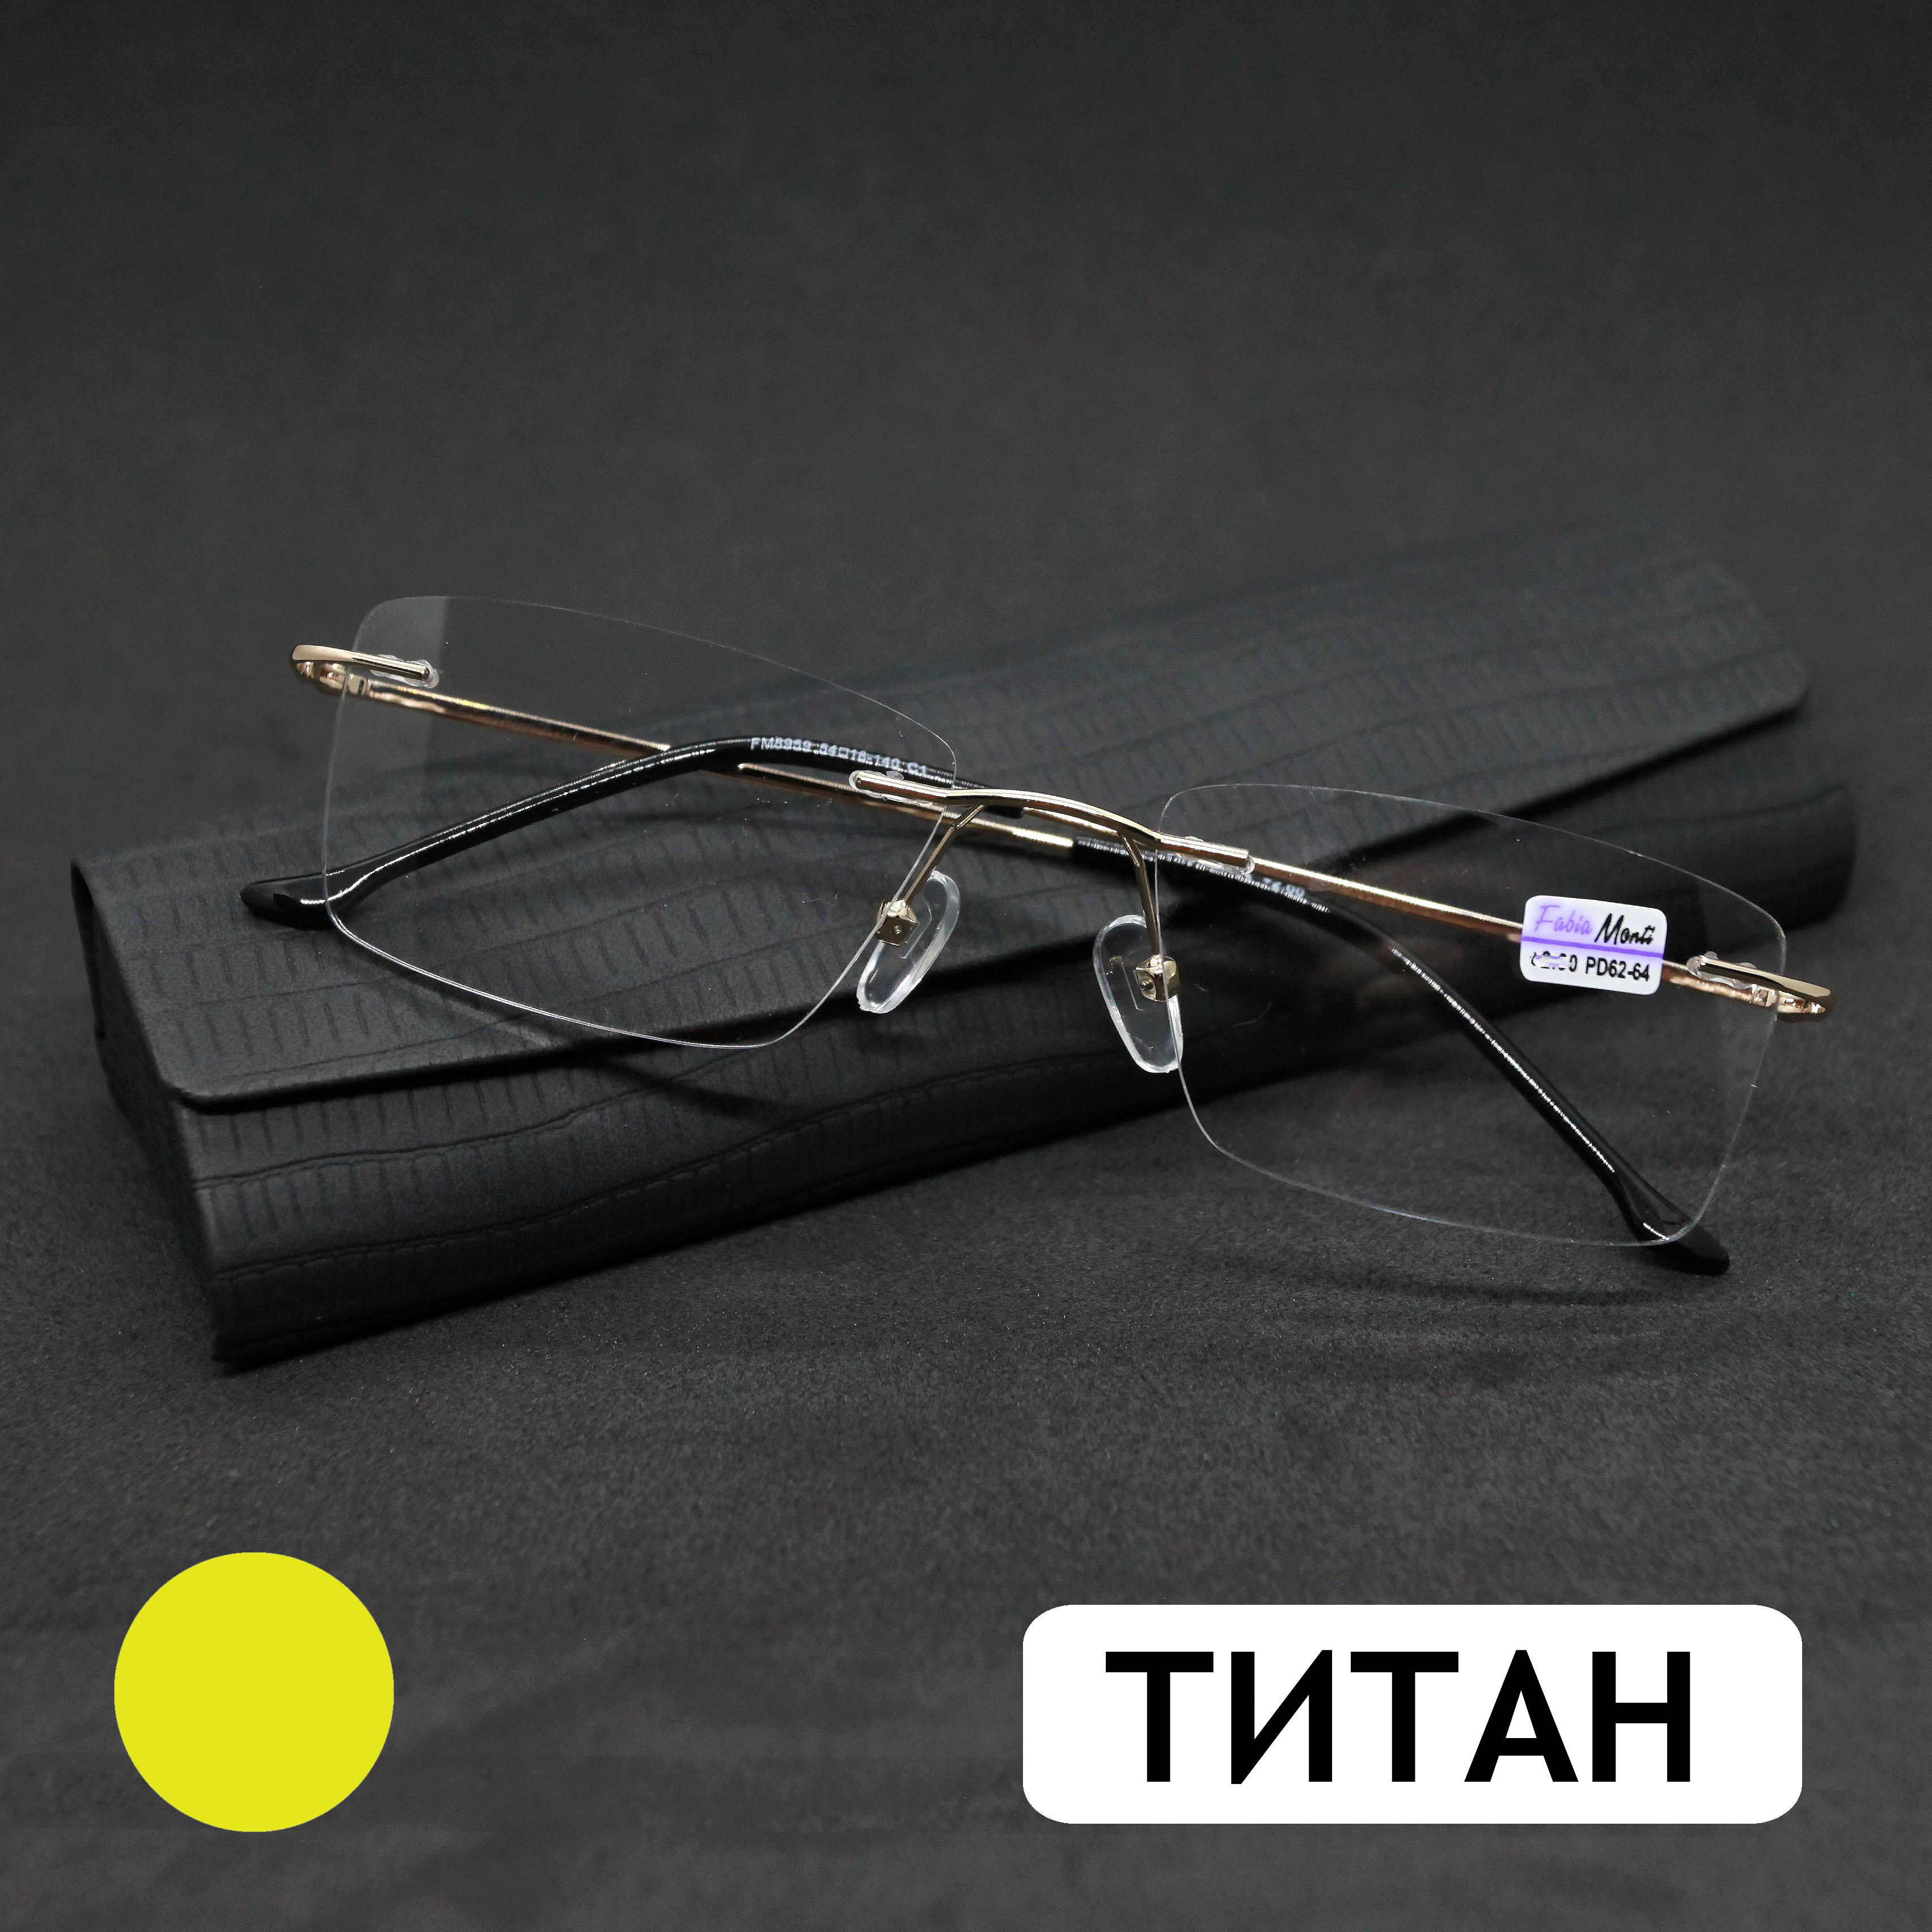 Безободковые очки FM 8959 -2.00, c футляром, оправа титан, золотые, РЦ 62-64